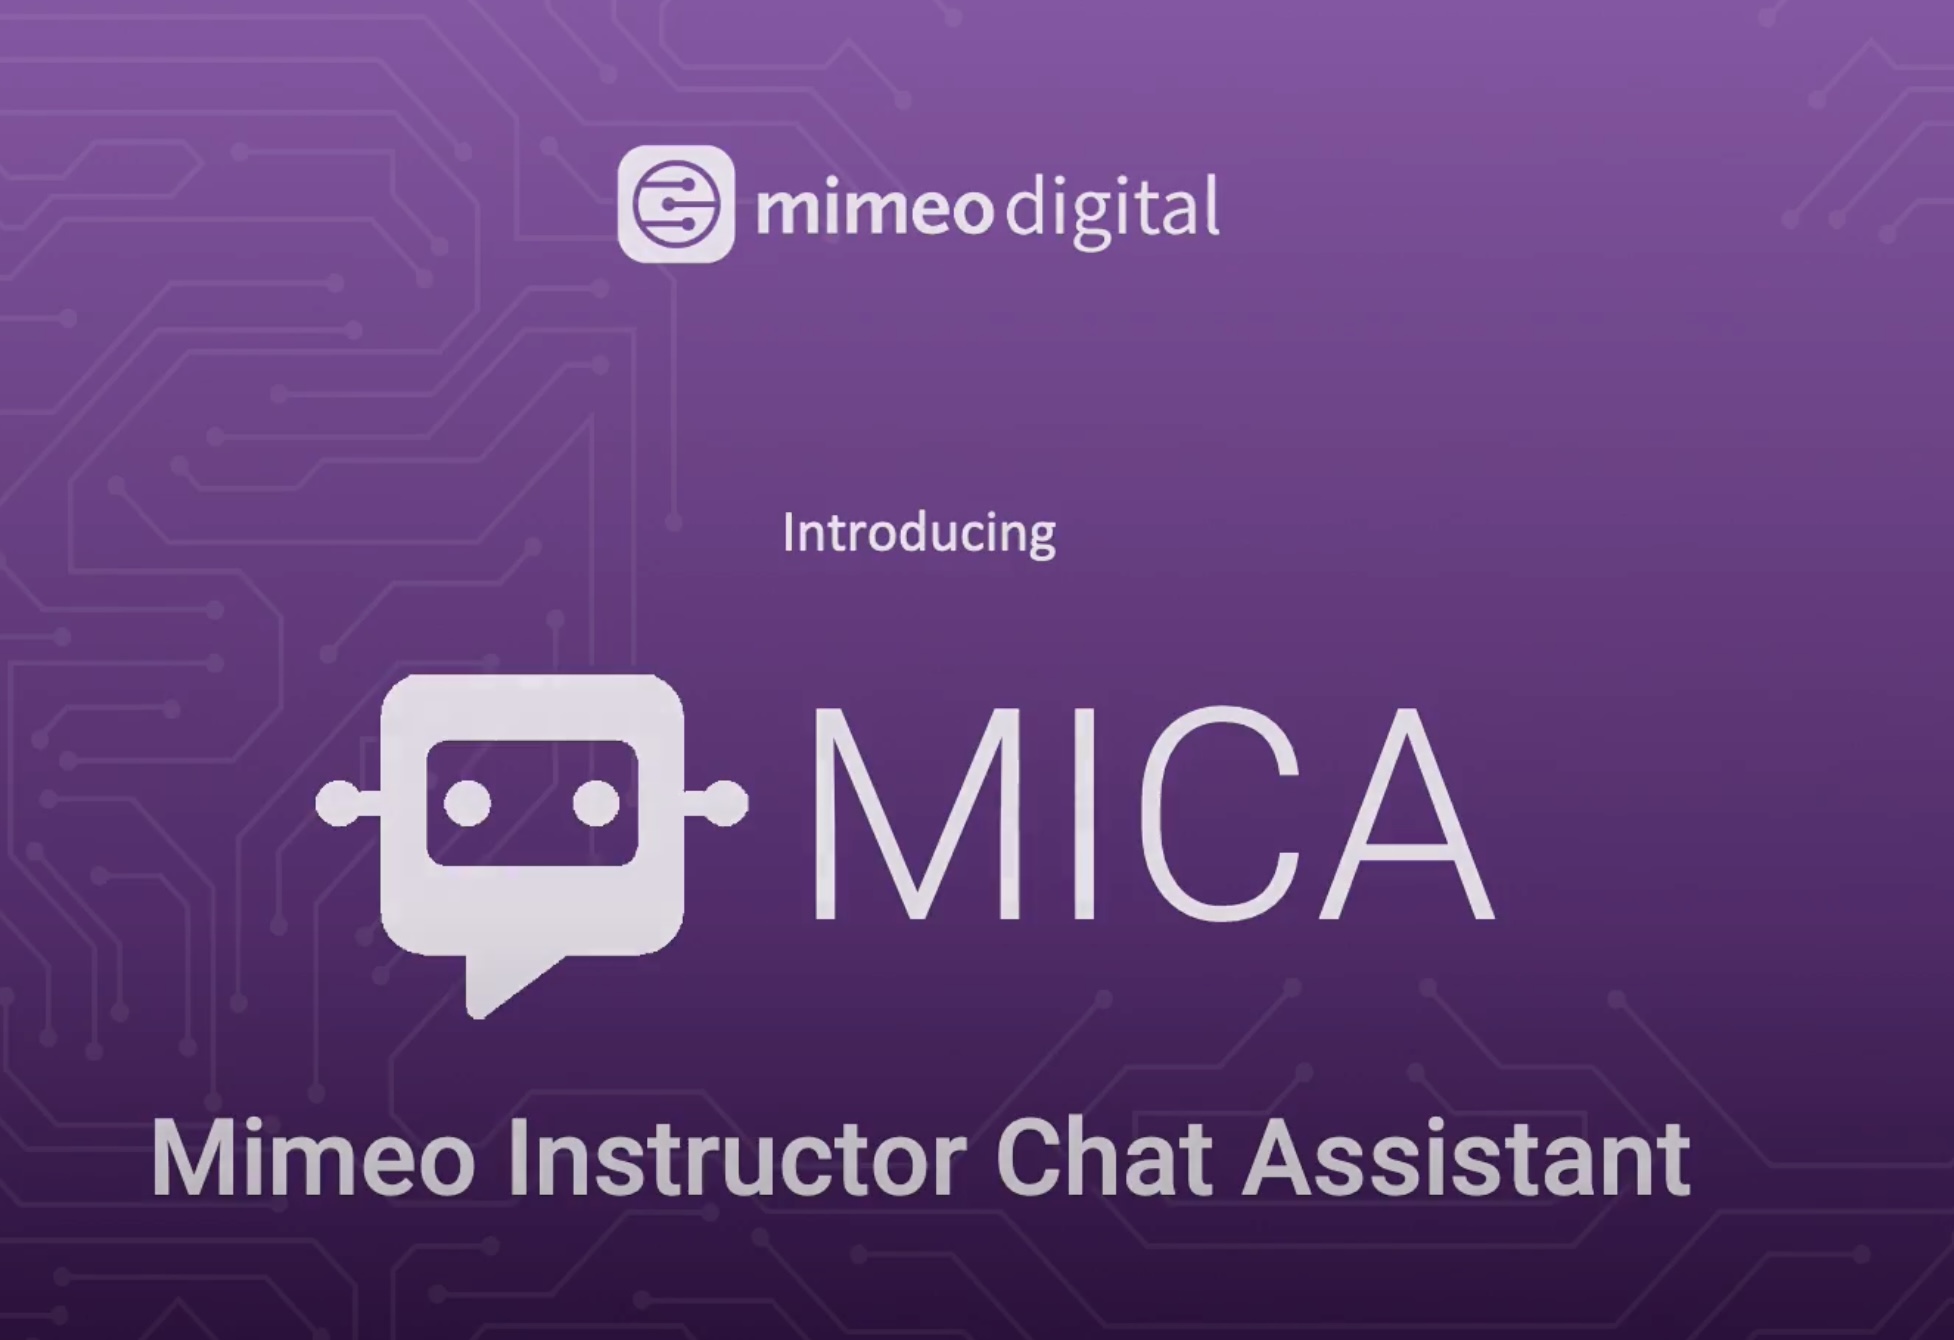 Mimeo digital AI - MICA